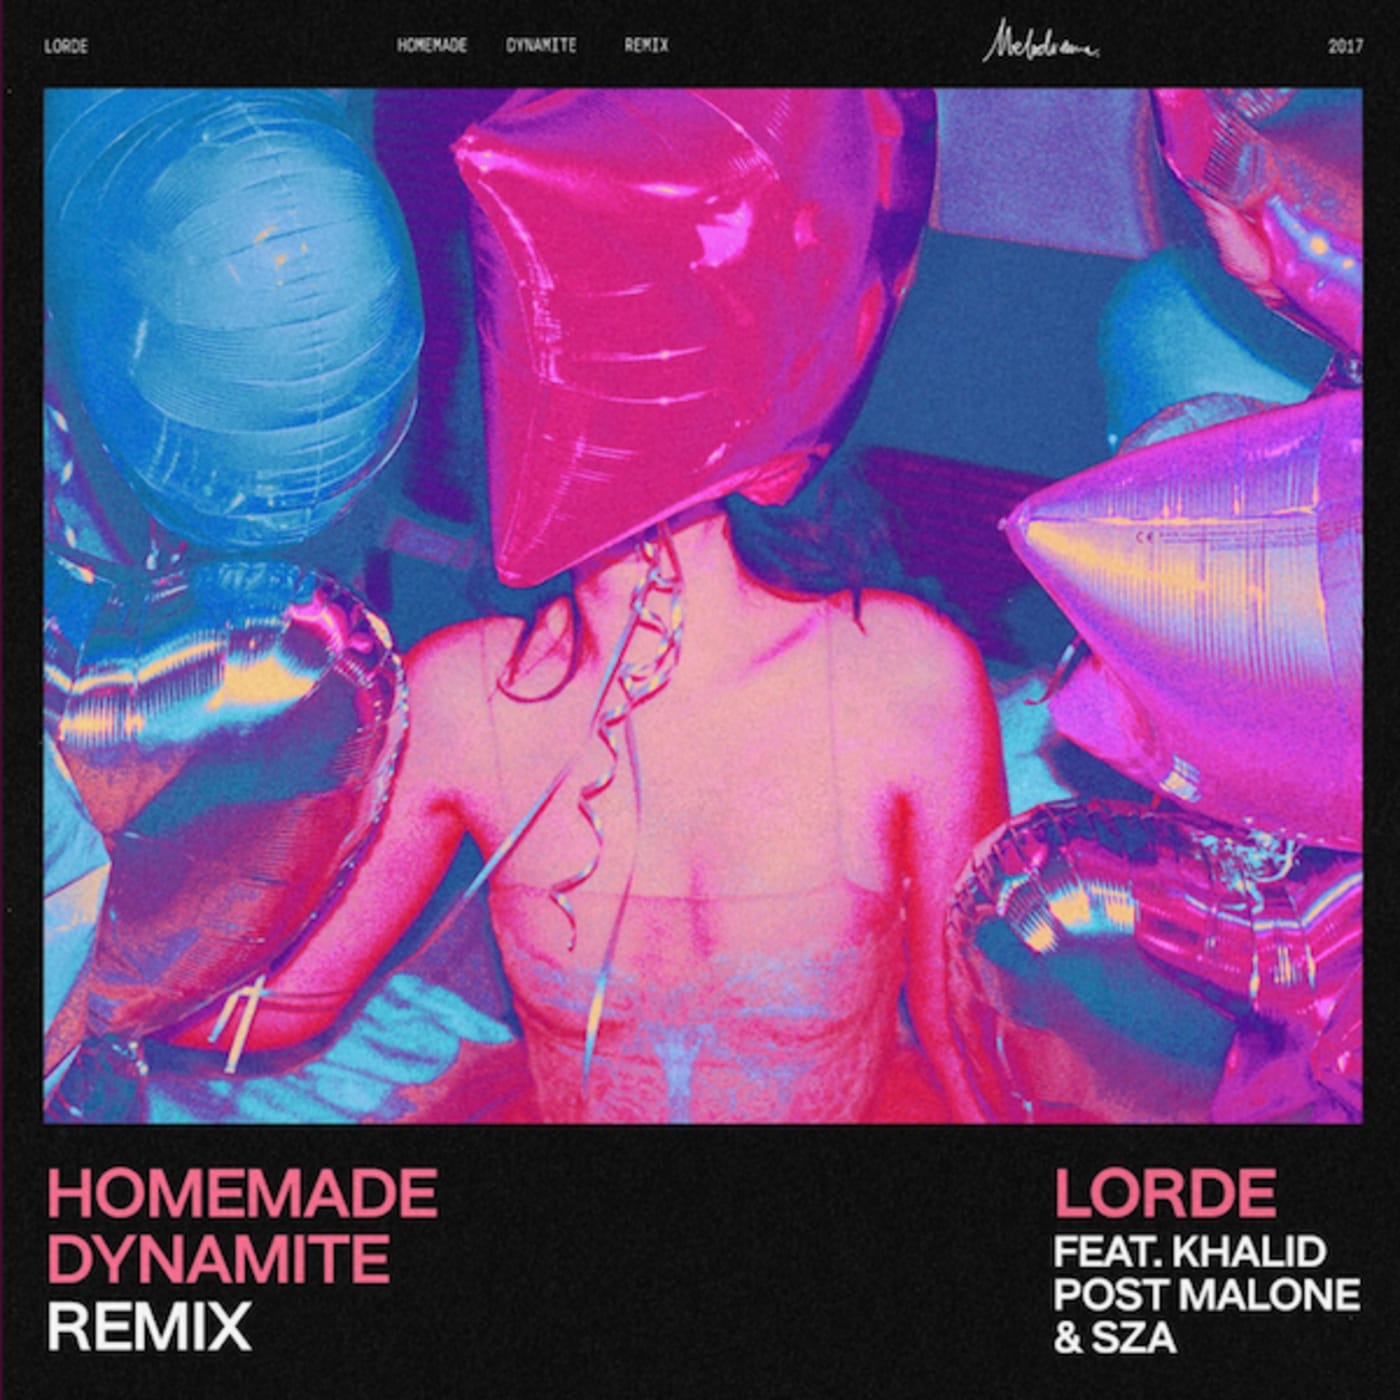 Lorde f/ Khalid, SZA, Pos Malone, "Homemade Dynamite" remix